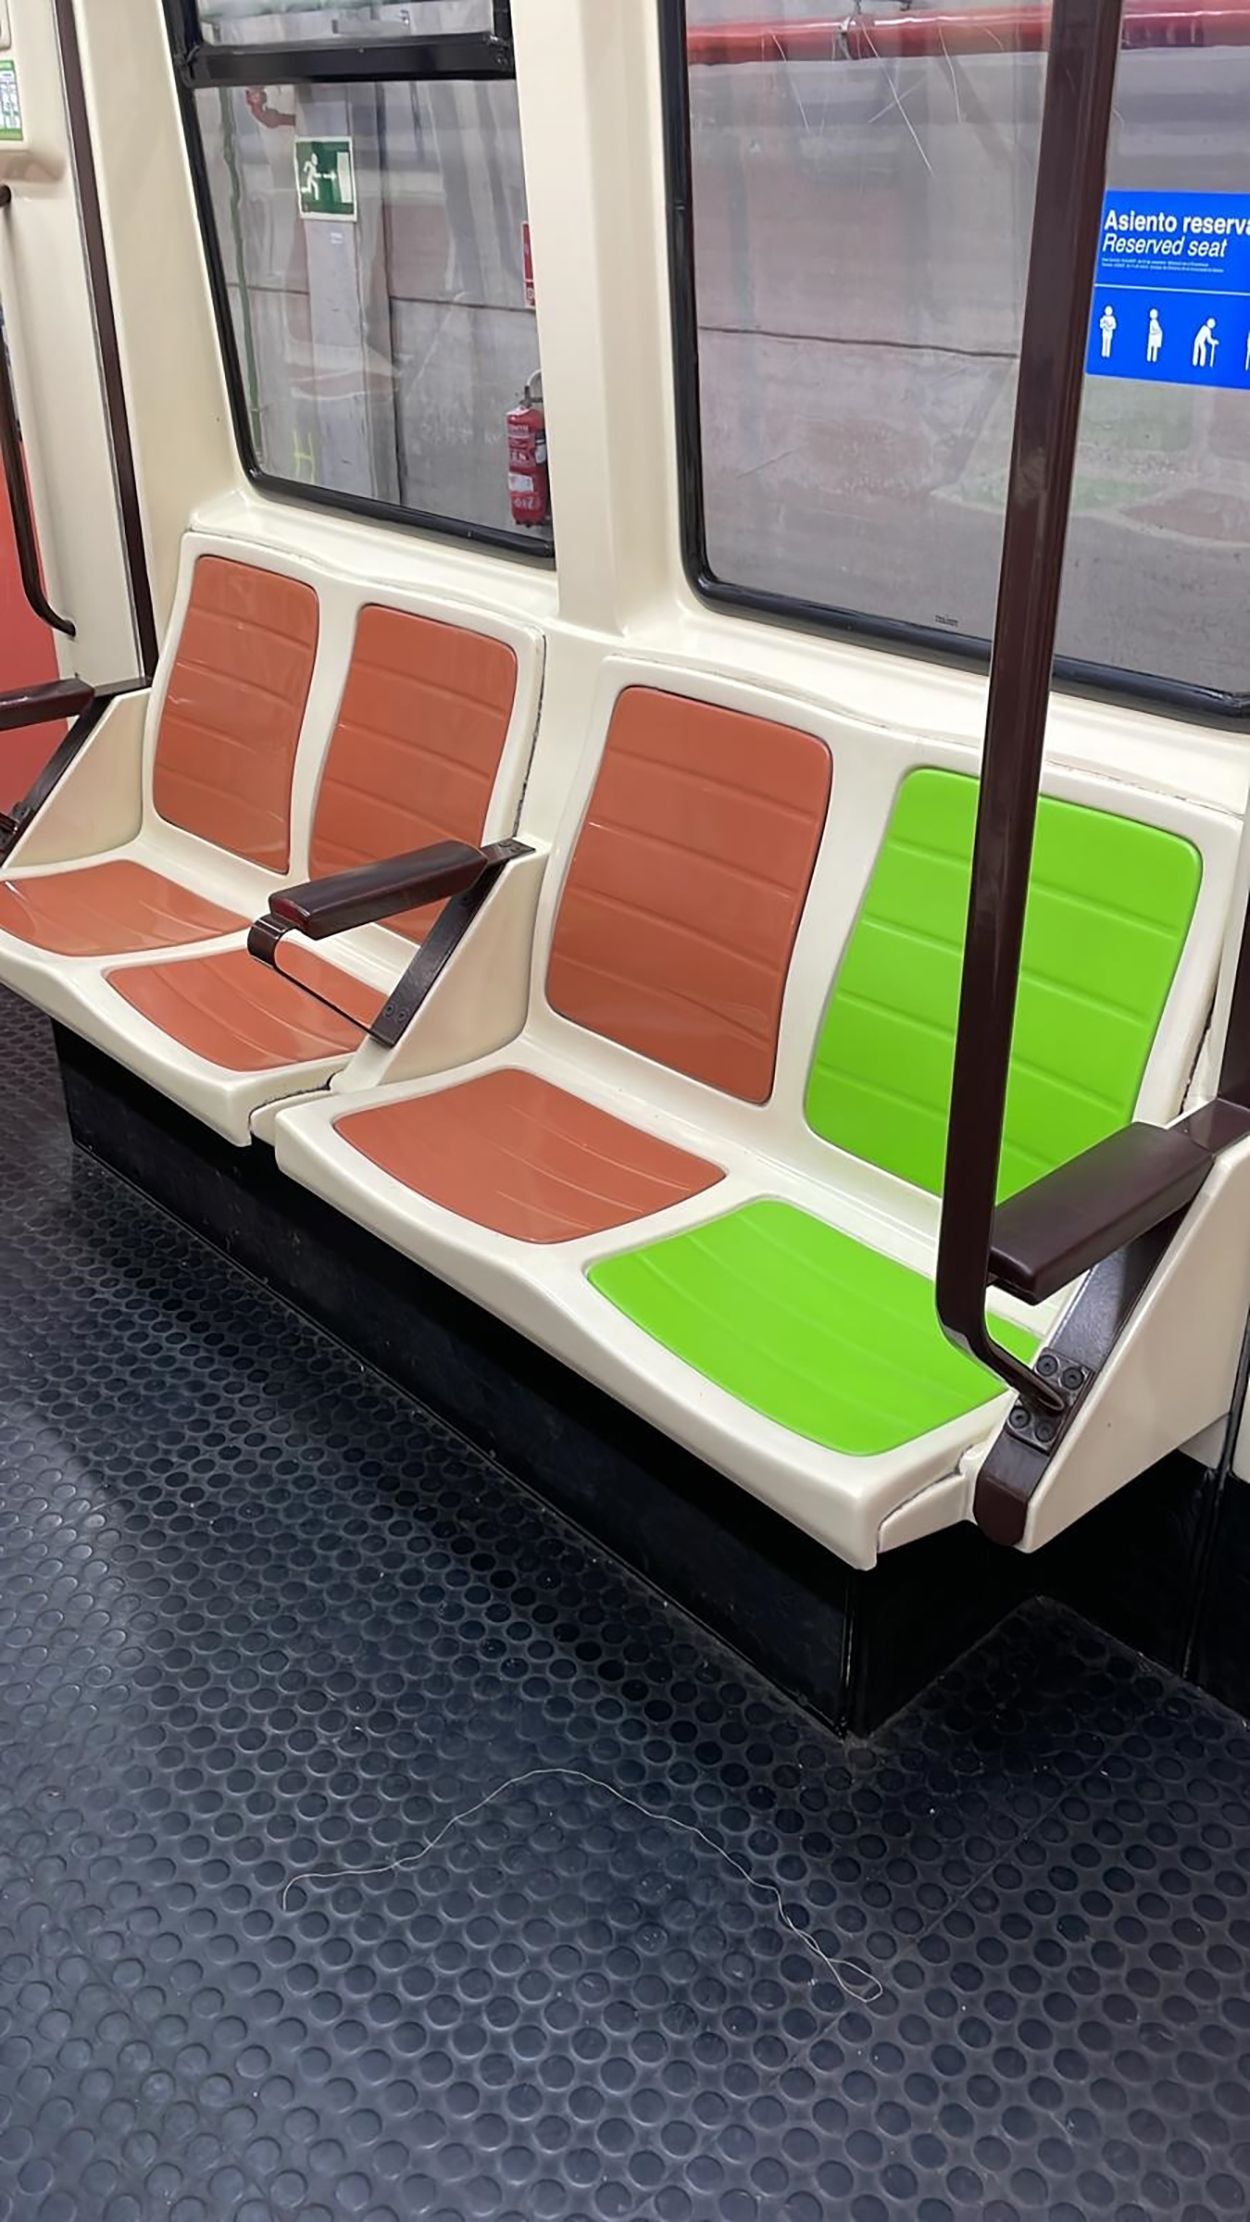 Metro de Madrid estrena asientos de color verde reservados para personas mayores